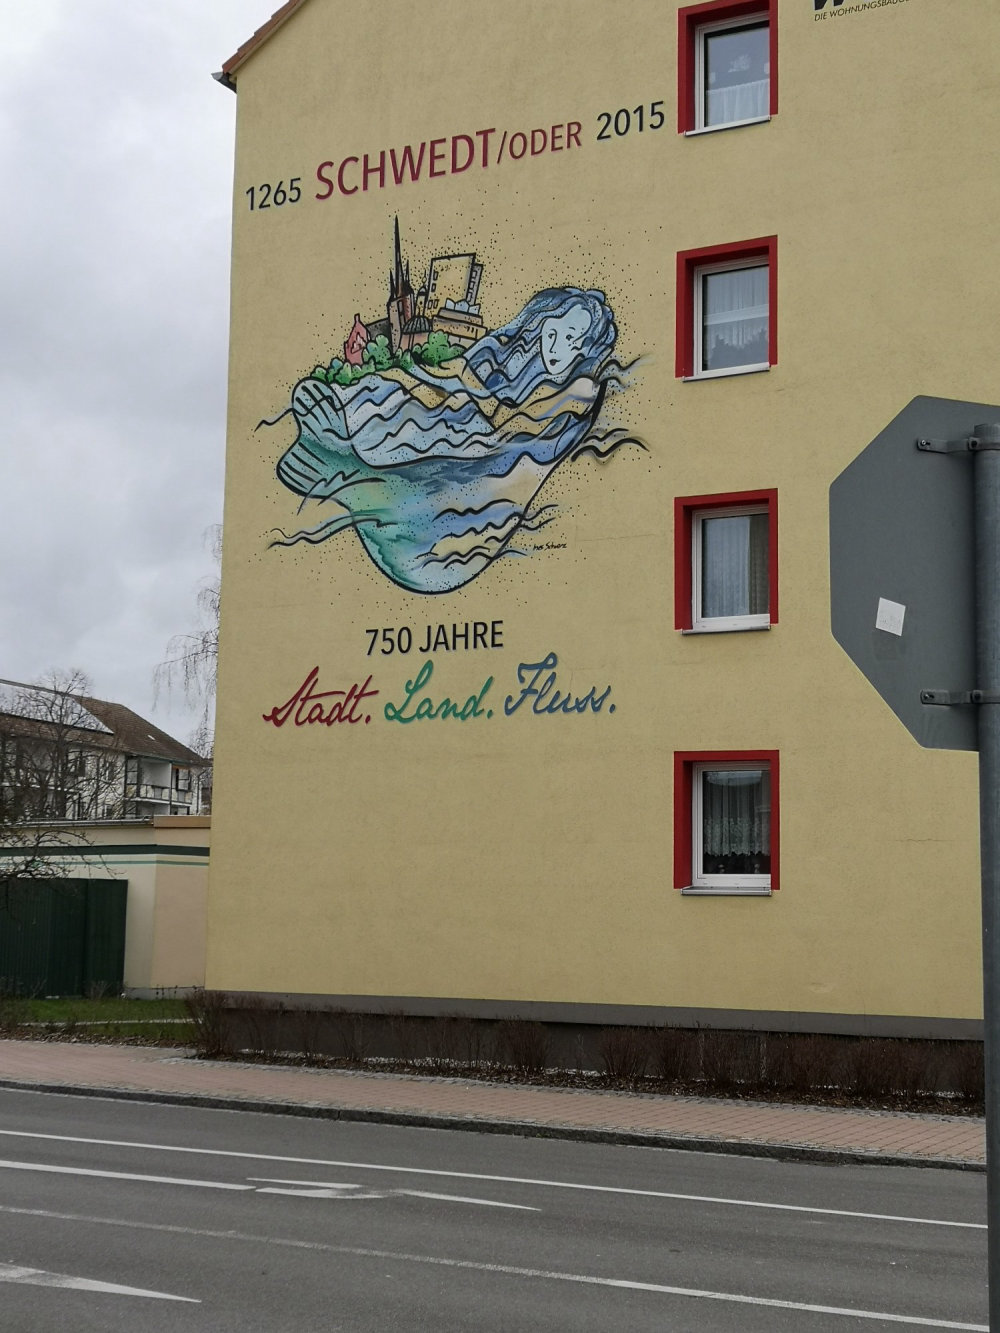 mural in Schwedt/Oder by artist unknown.